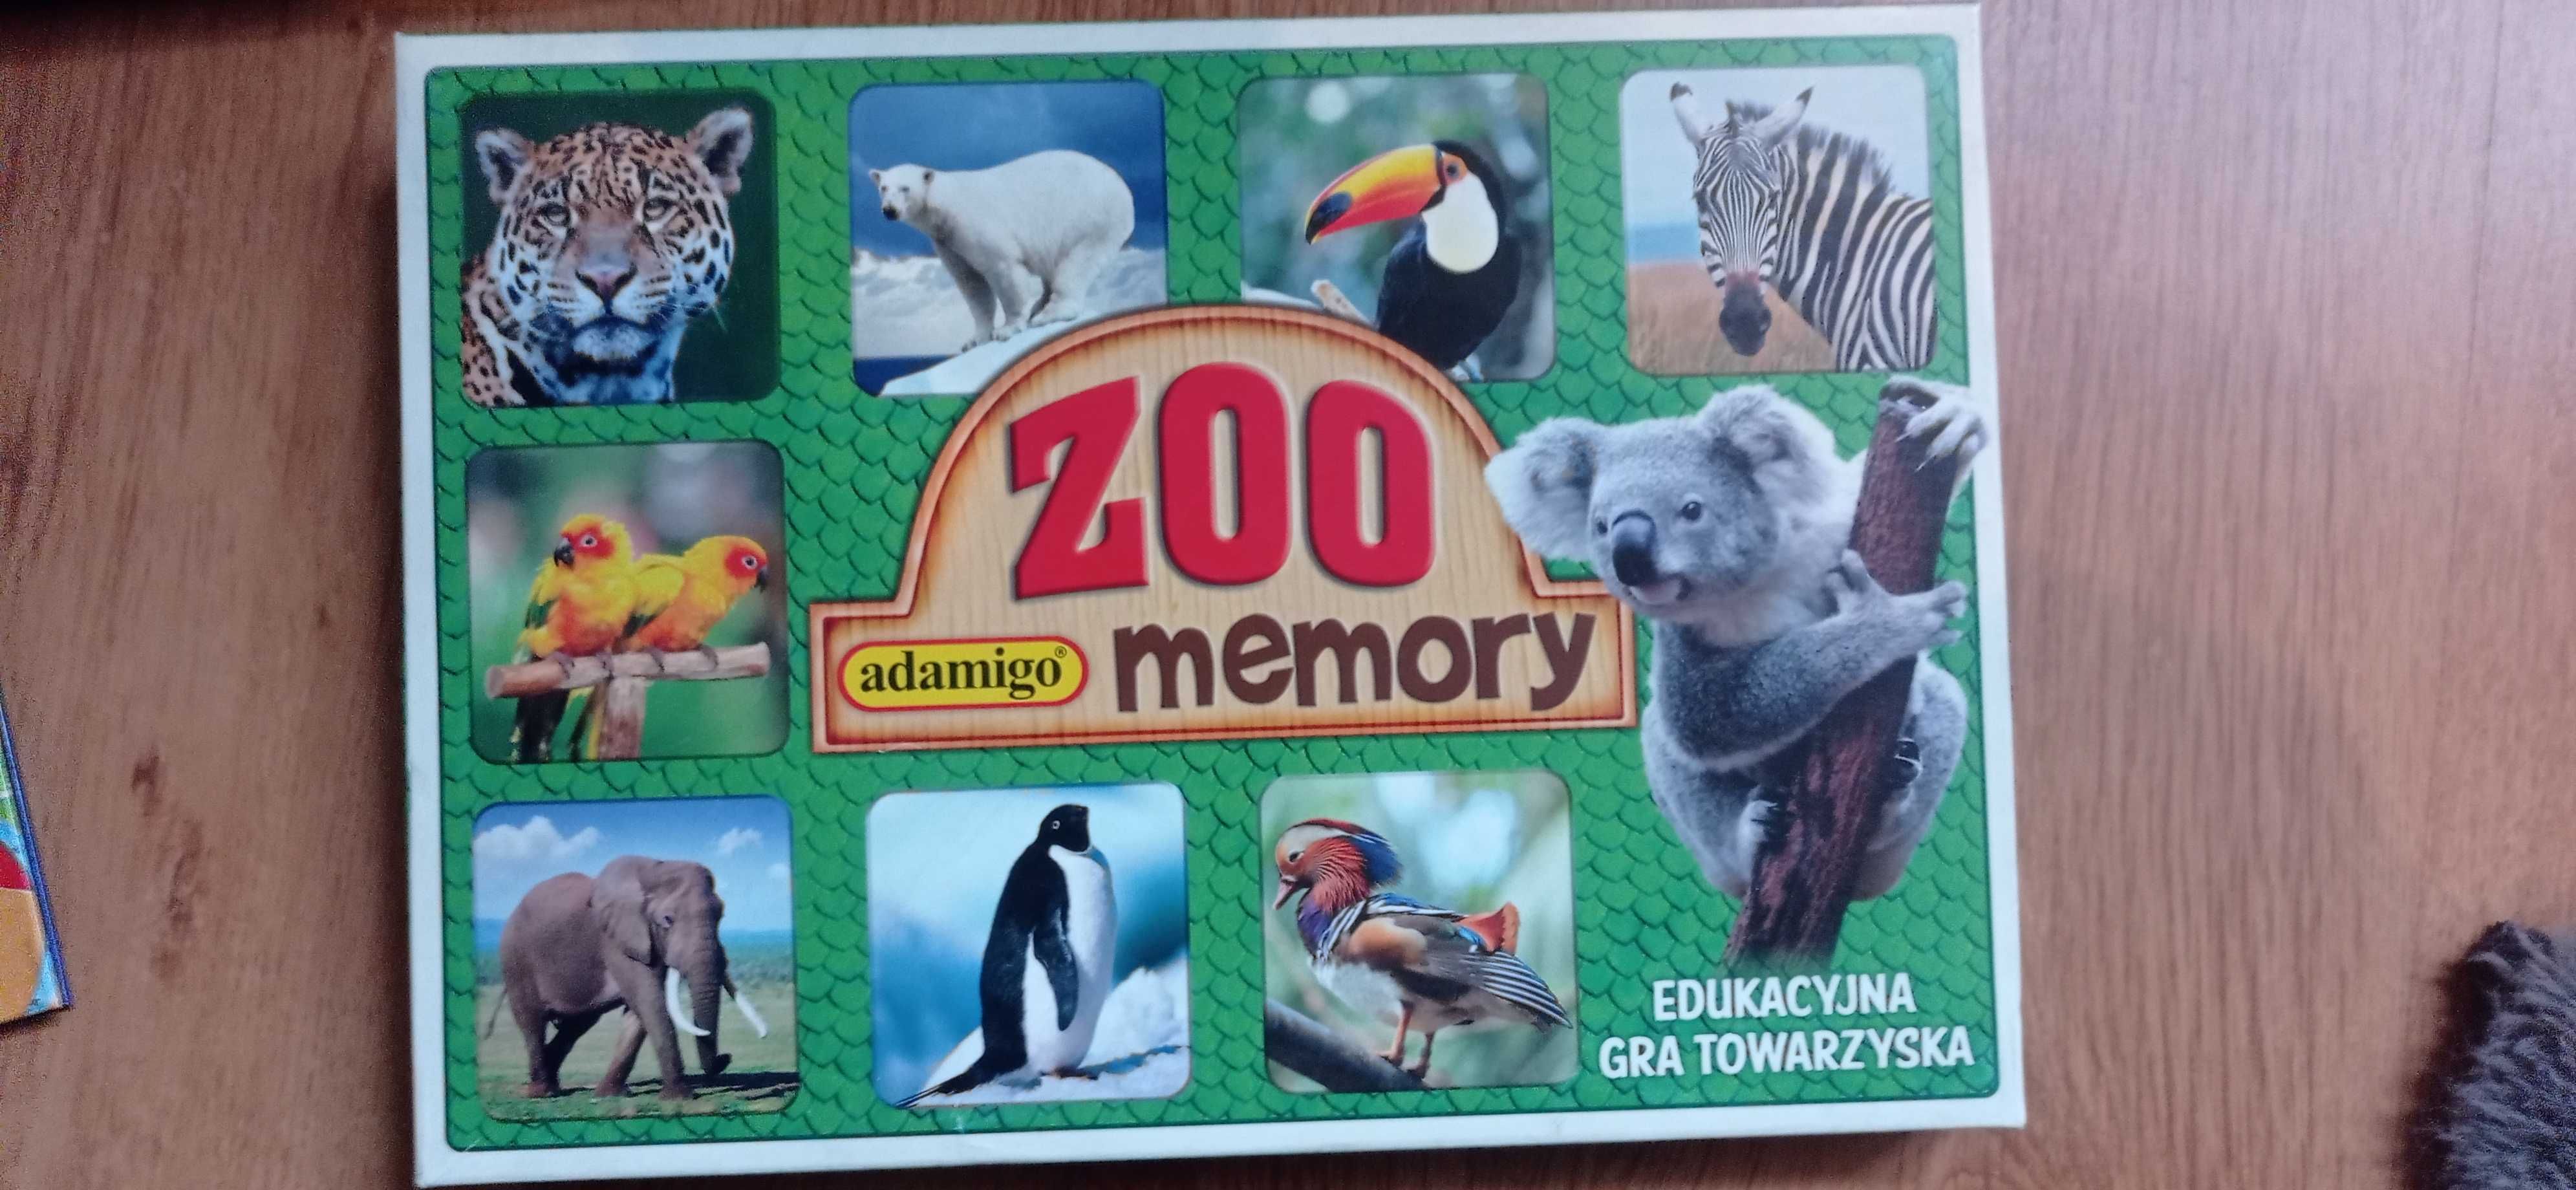 Sprzedam grę memory zoo